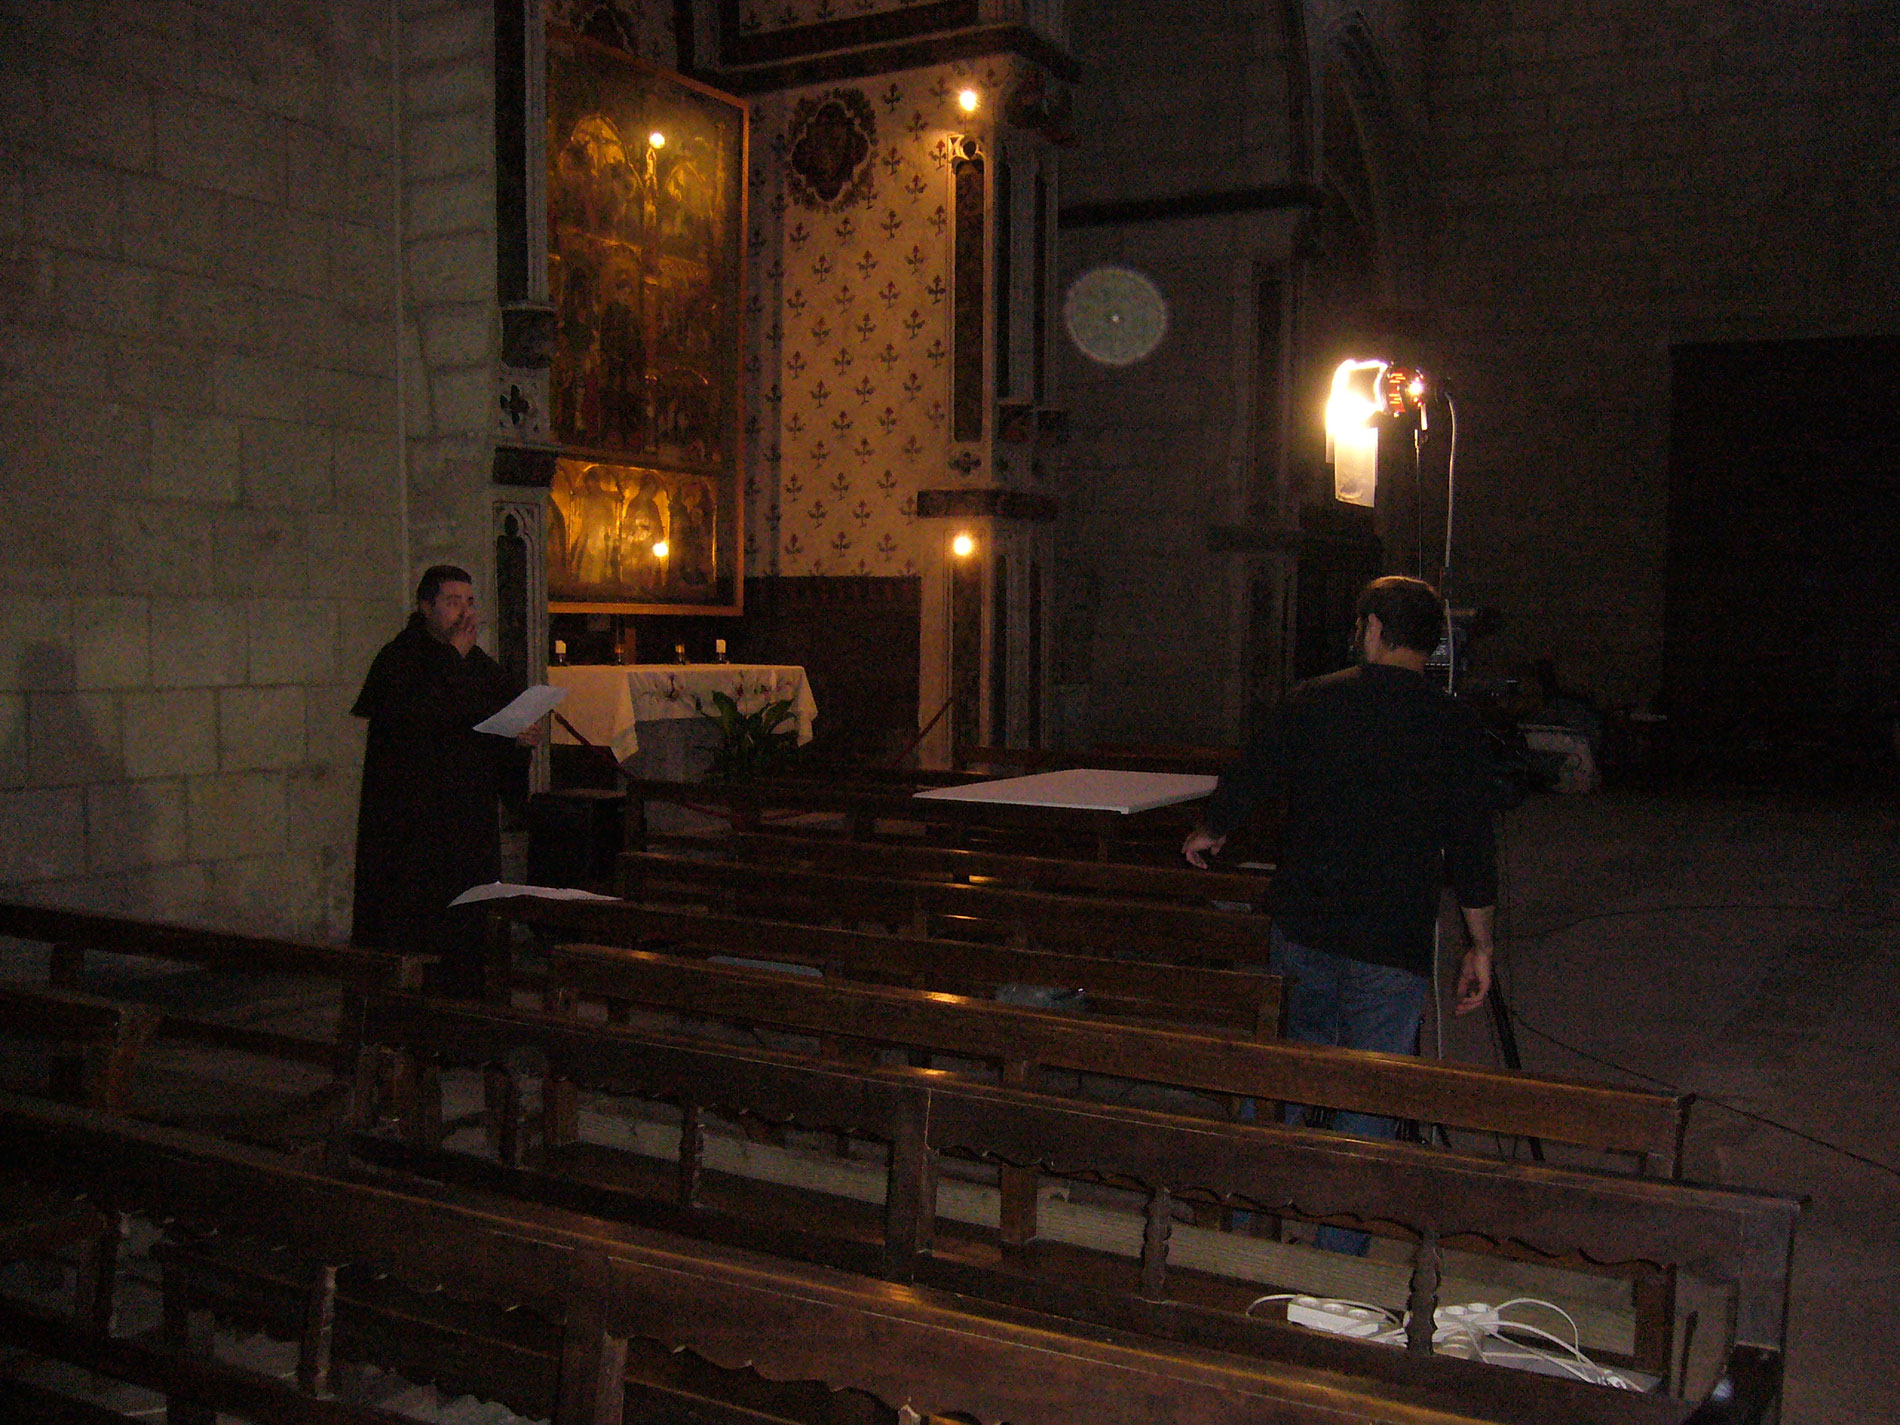 Rodatge a Sant Francesc, amb el retaule de Sant Jordi i la Mare de Déu al fons